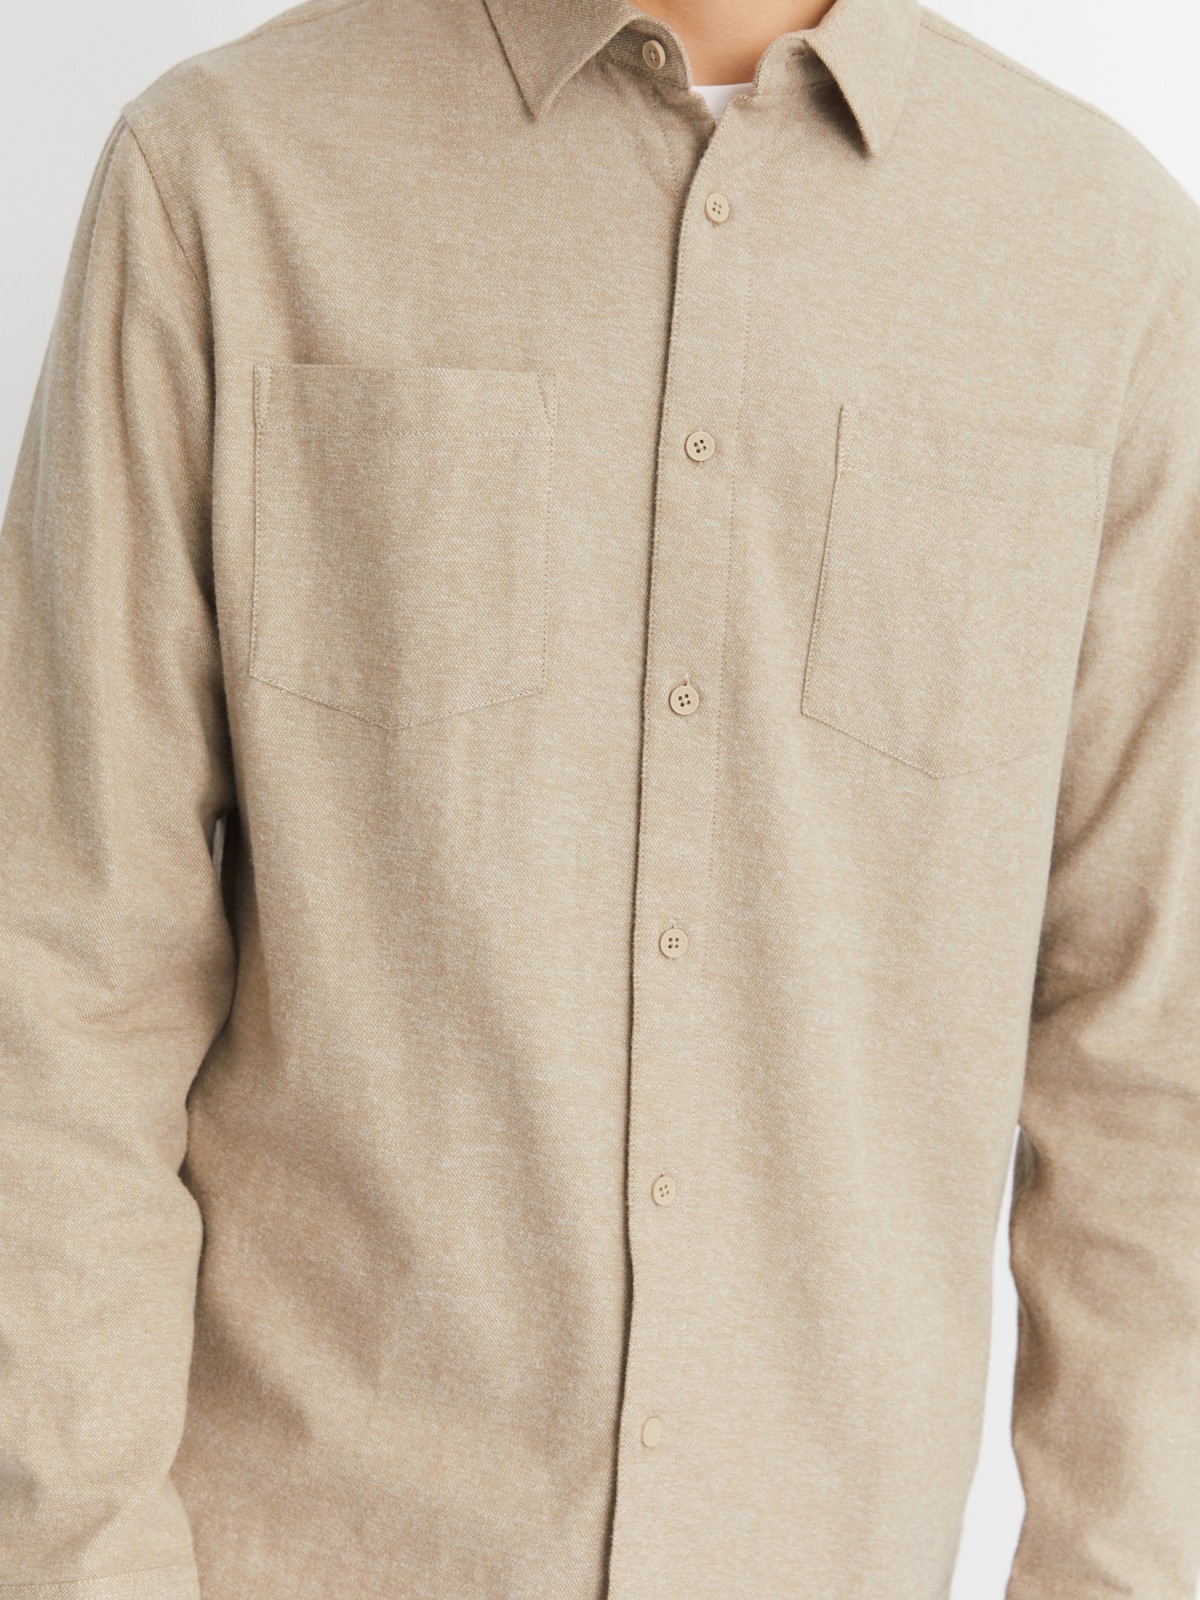 Рубашка из хлопка с длинным рукавом zolla 012422159061, цвет бежевый, размер M - фото 5